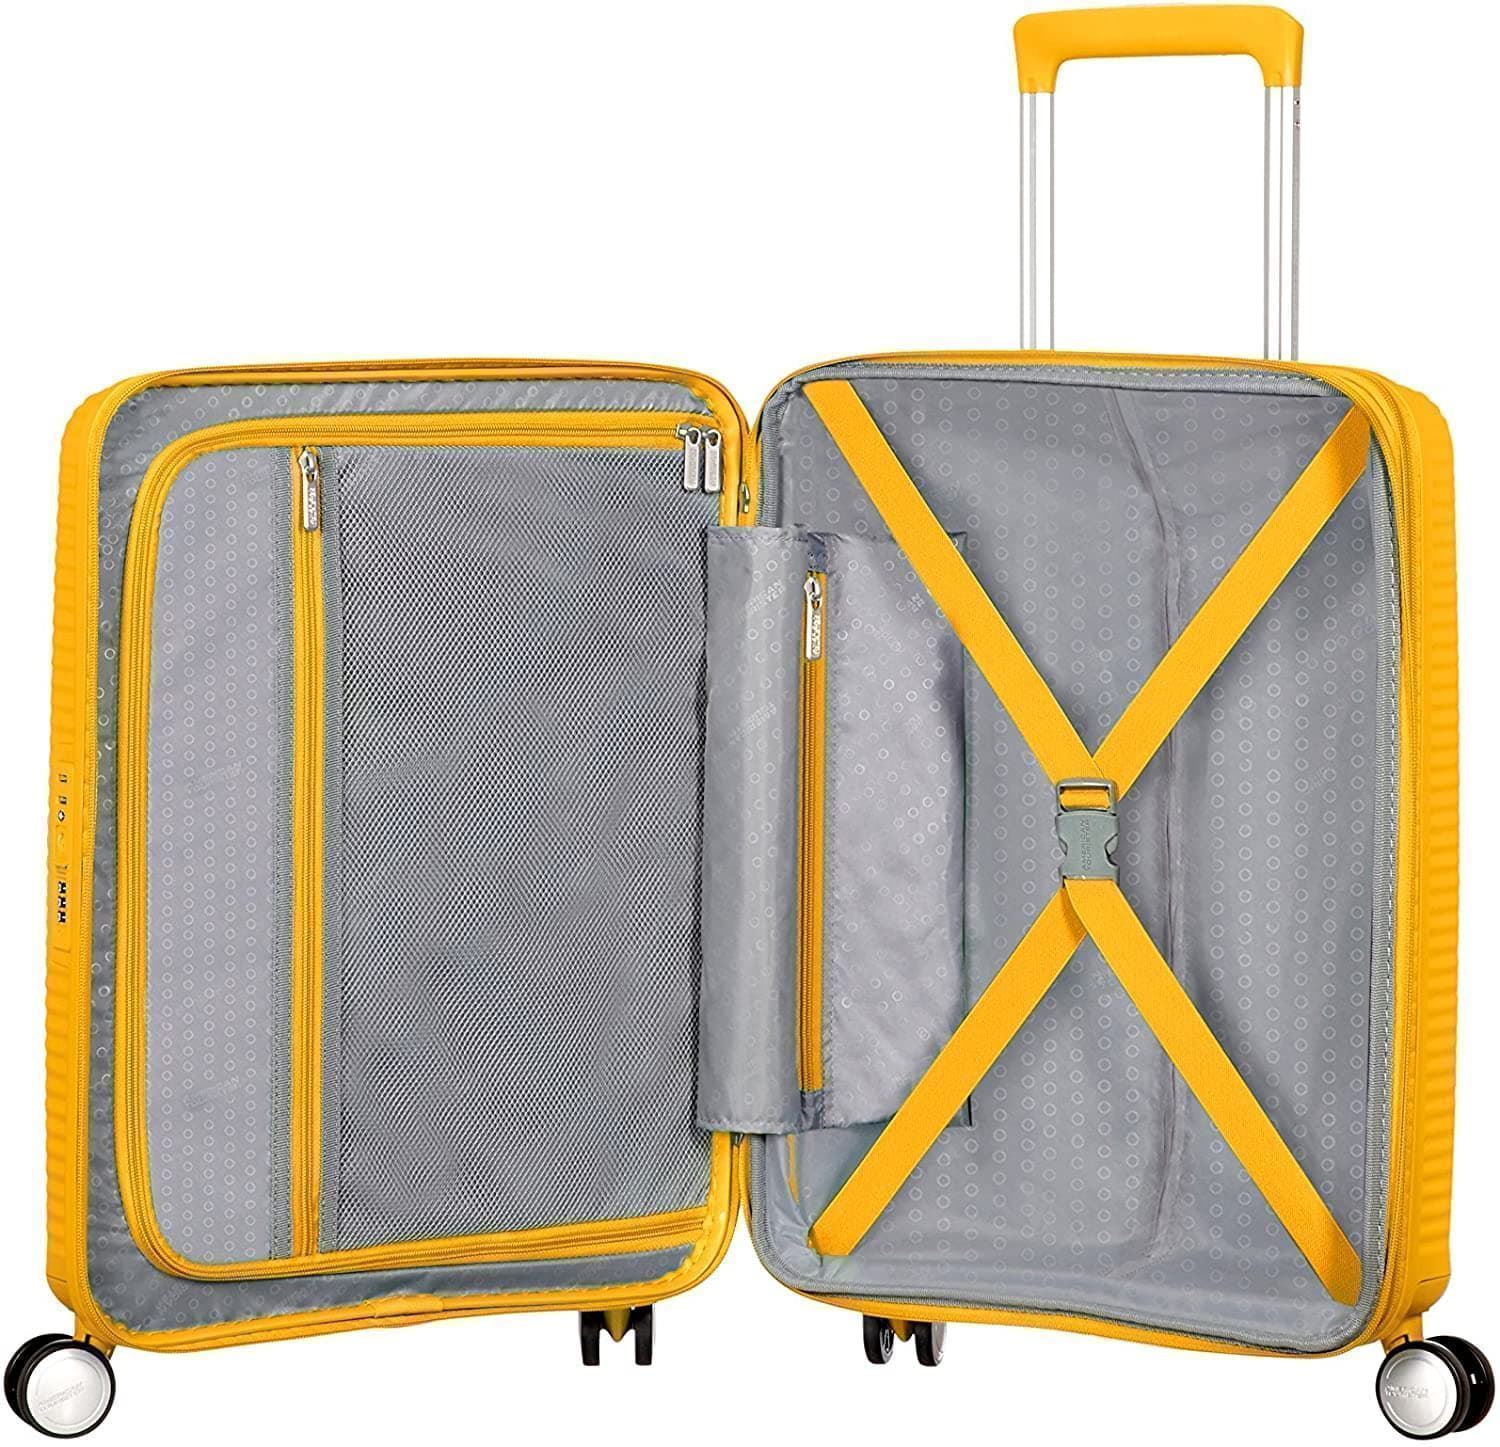 American Tourister Soundbox maleta cabina expandible Amarillo 3 años de garantia - Imagen 5